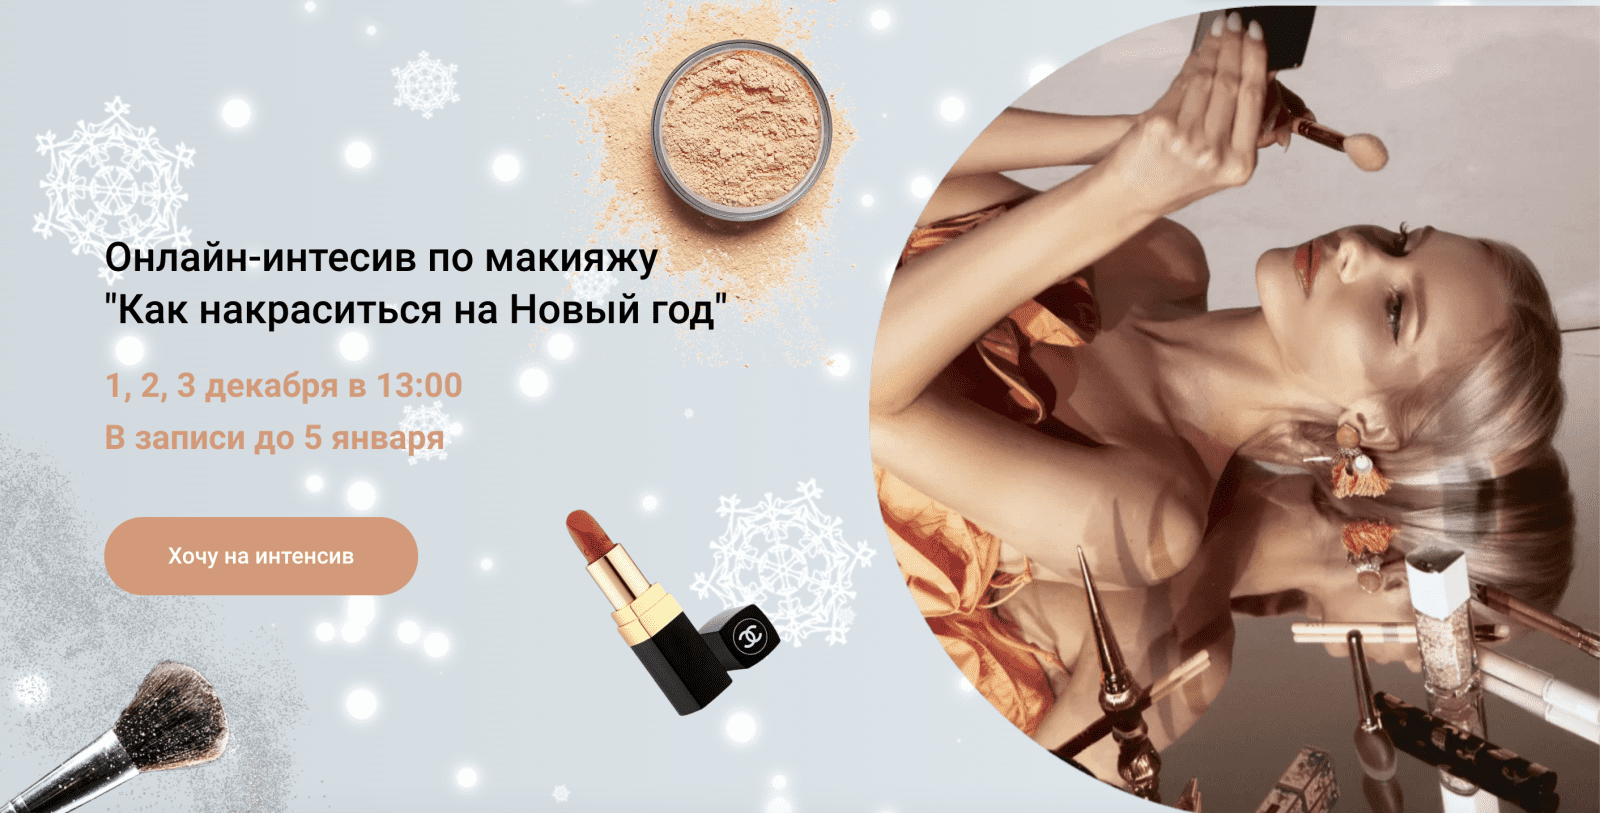 Изображение [Анастасия Черемнова] Онлайн-интесив по макияжу «Как накраситься на Новый год» (2021) в посте 246913